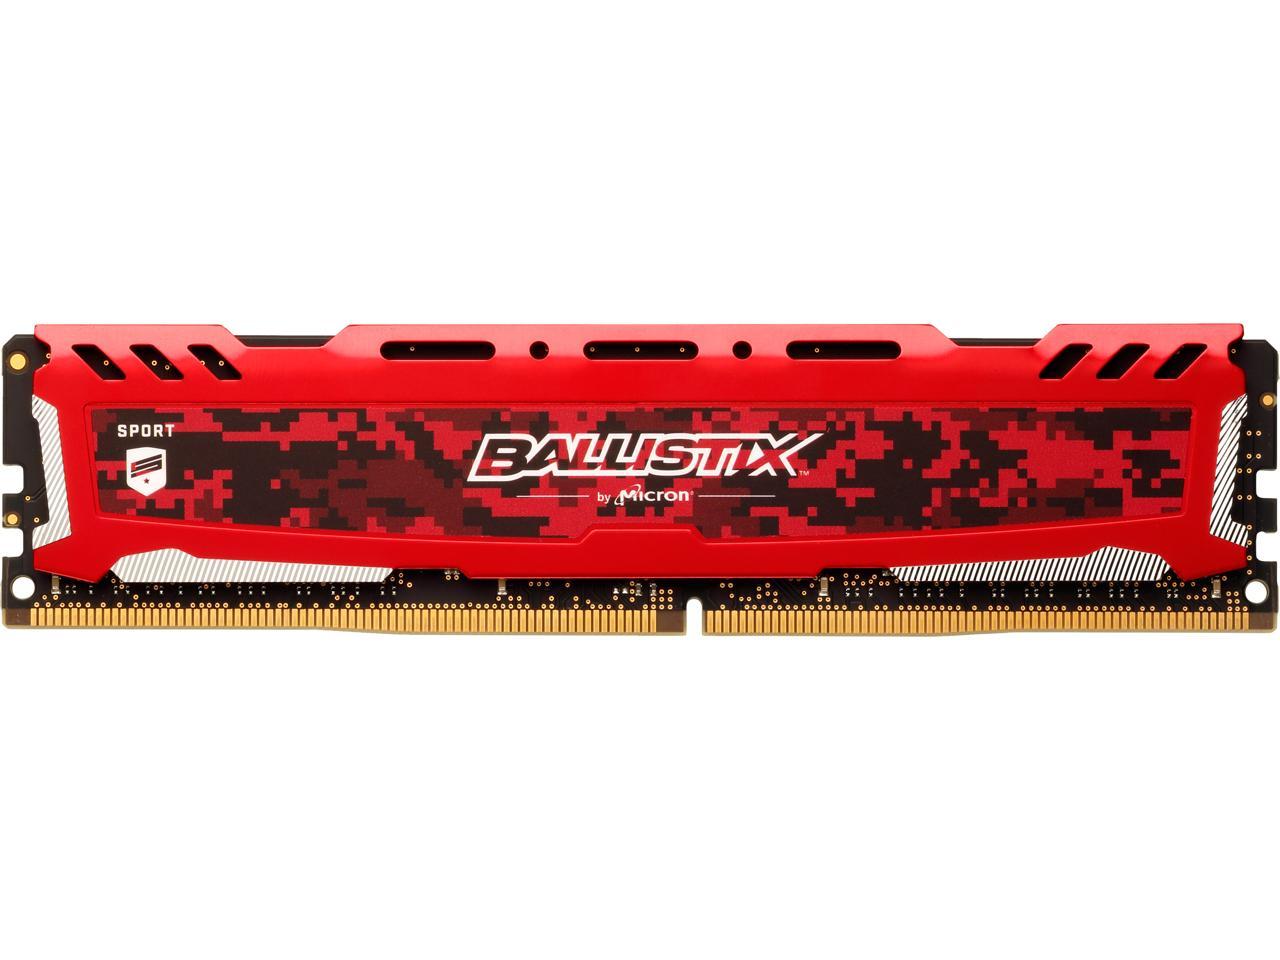 Ballistix Sport LT 16GB Single DDR4 2666 MT/s (PC4-21300) DR x8 DIMM 288-Pin Memory - BLS16G4D26BFSE (Red)